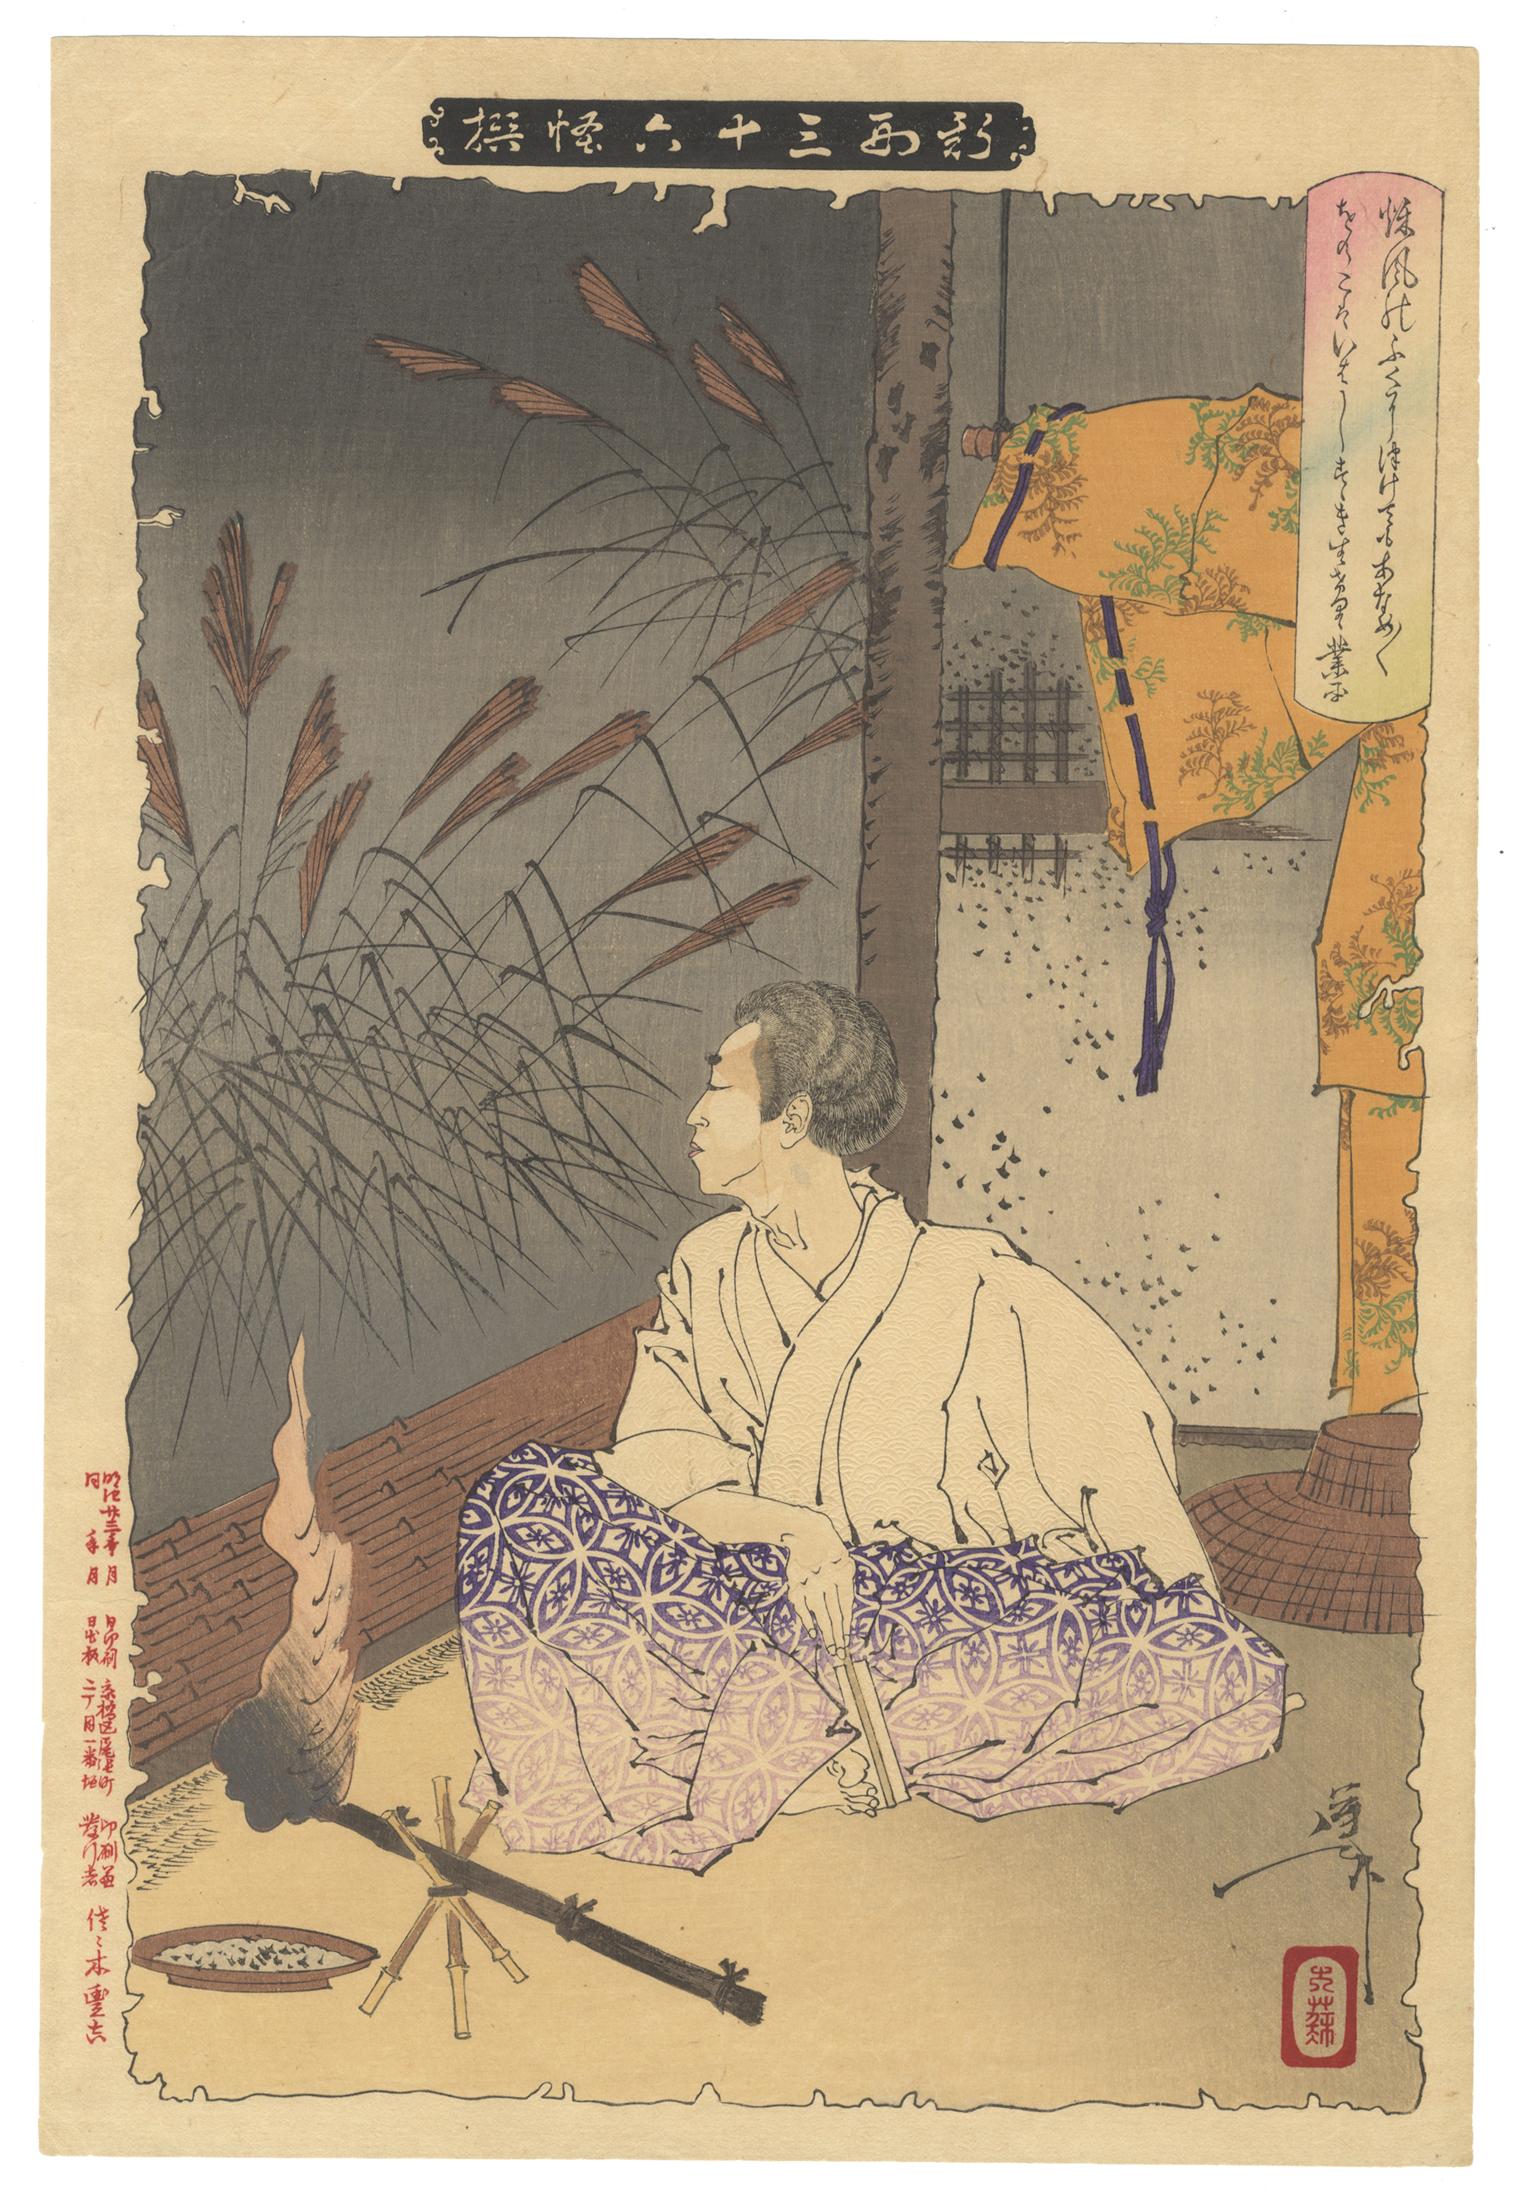 Tsukioka Yoshitoshi Figurative Print - Yoshitoshi, Ghost Story, Original Japanese Woodblock Print, Ukiyo-e Art, Meiji